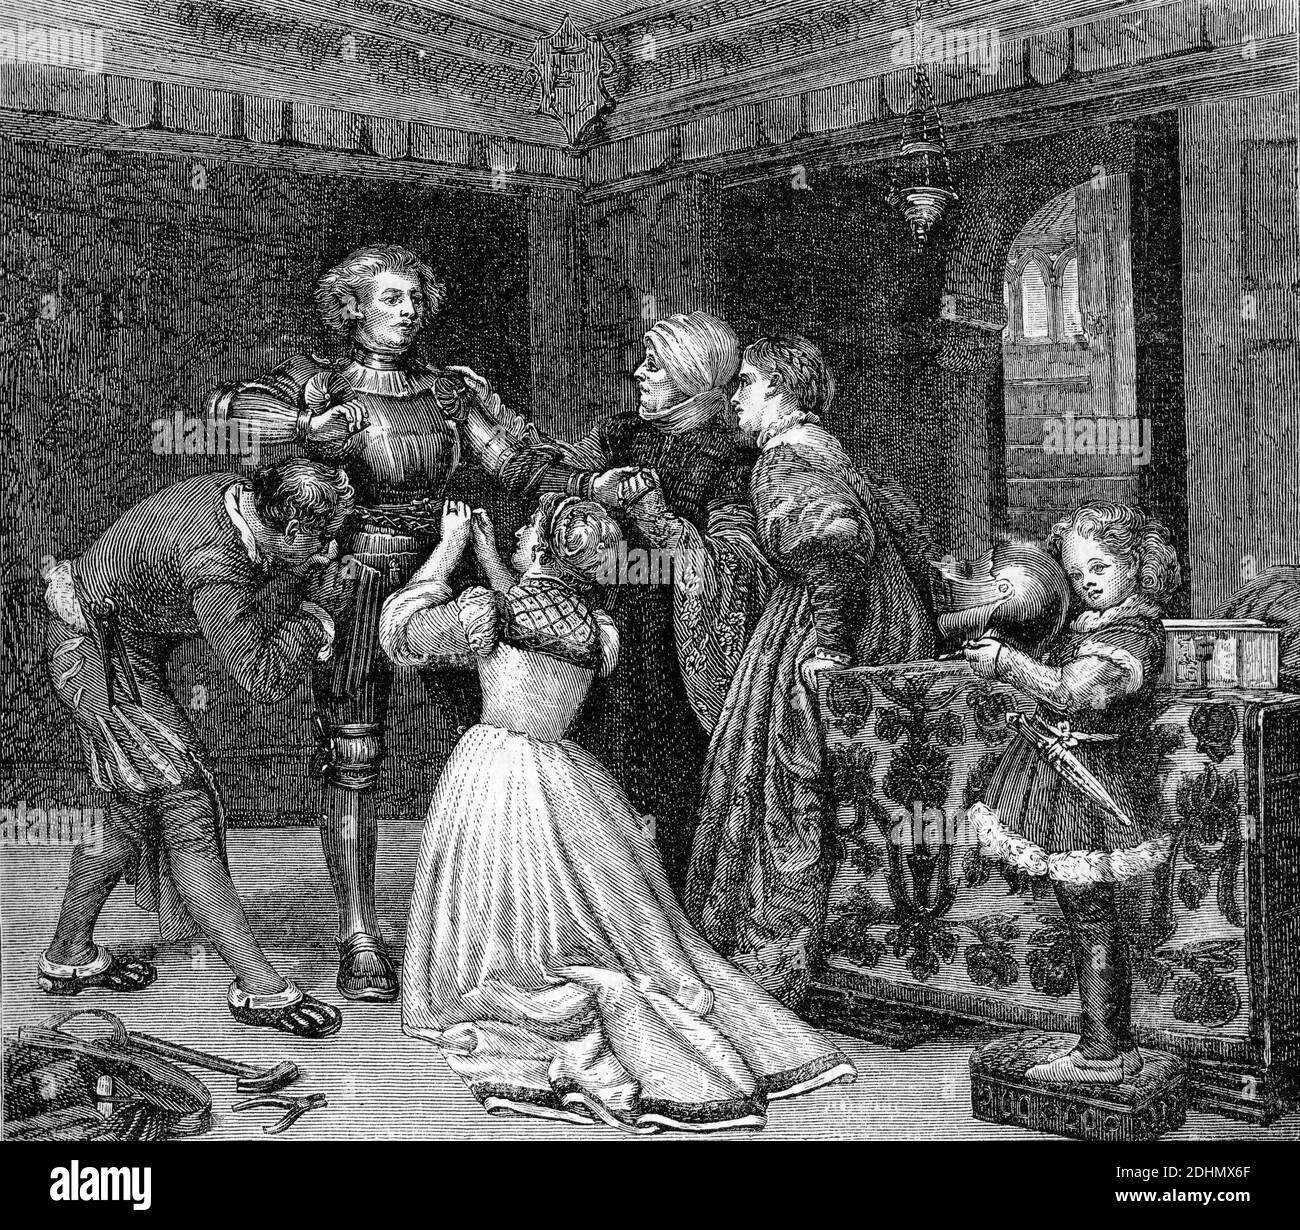 Gravure d'un groupe de personnes armant un chevalier médiéval. Illustration de 'l'histoire du protestantisme' par James Aitken Wylie (1808-1890), pub. 1878 Banque D'Images